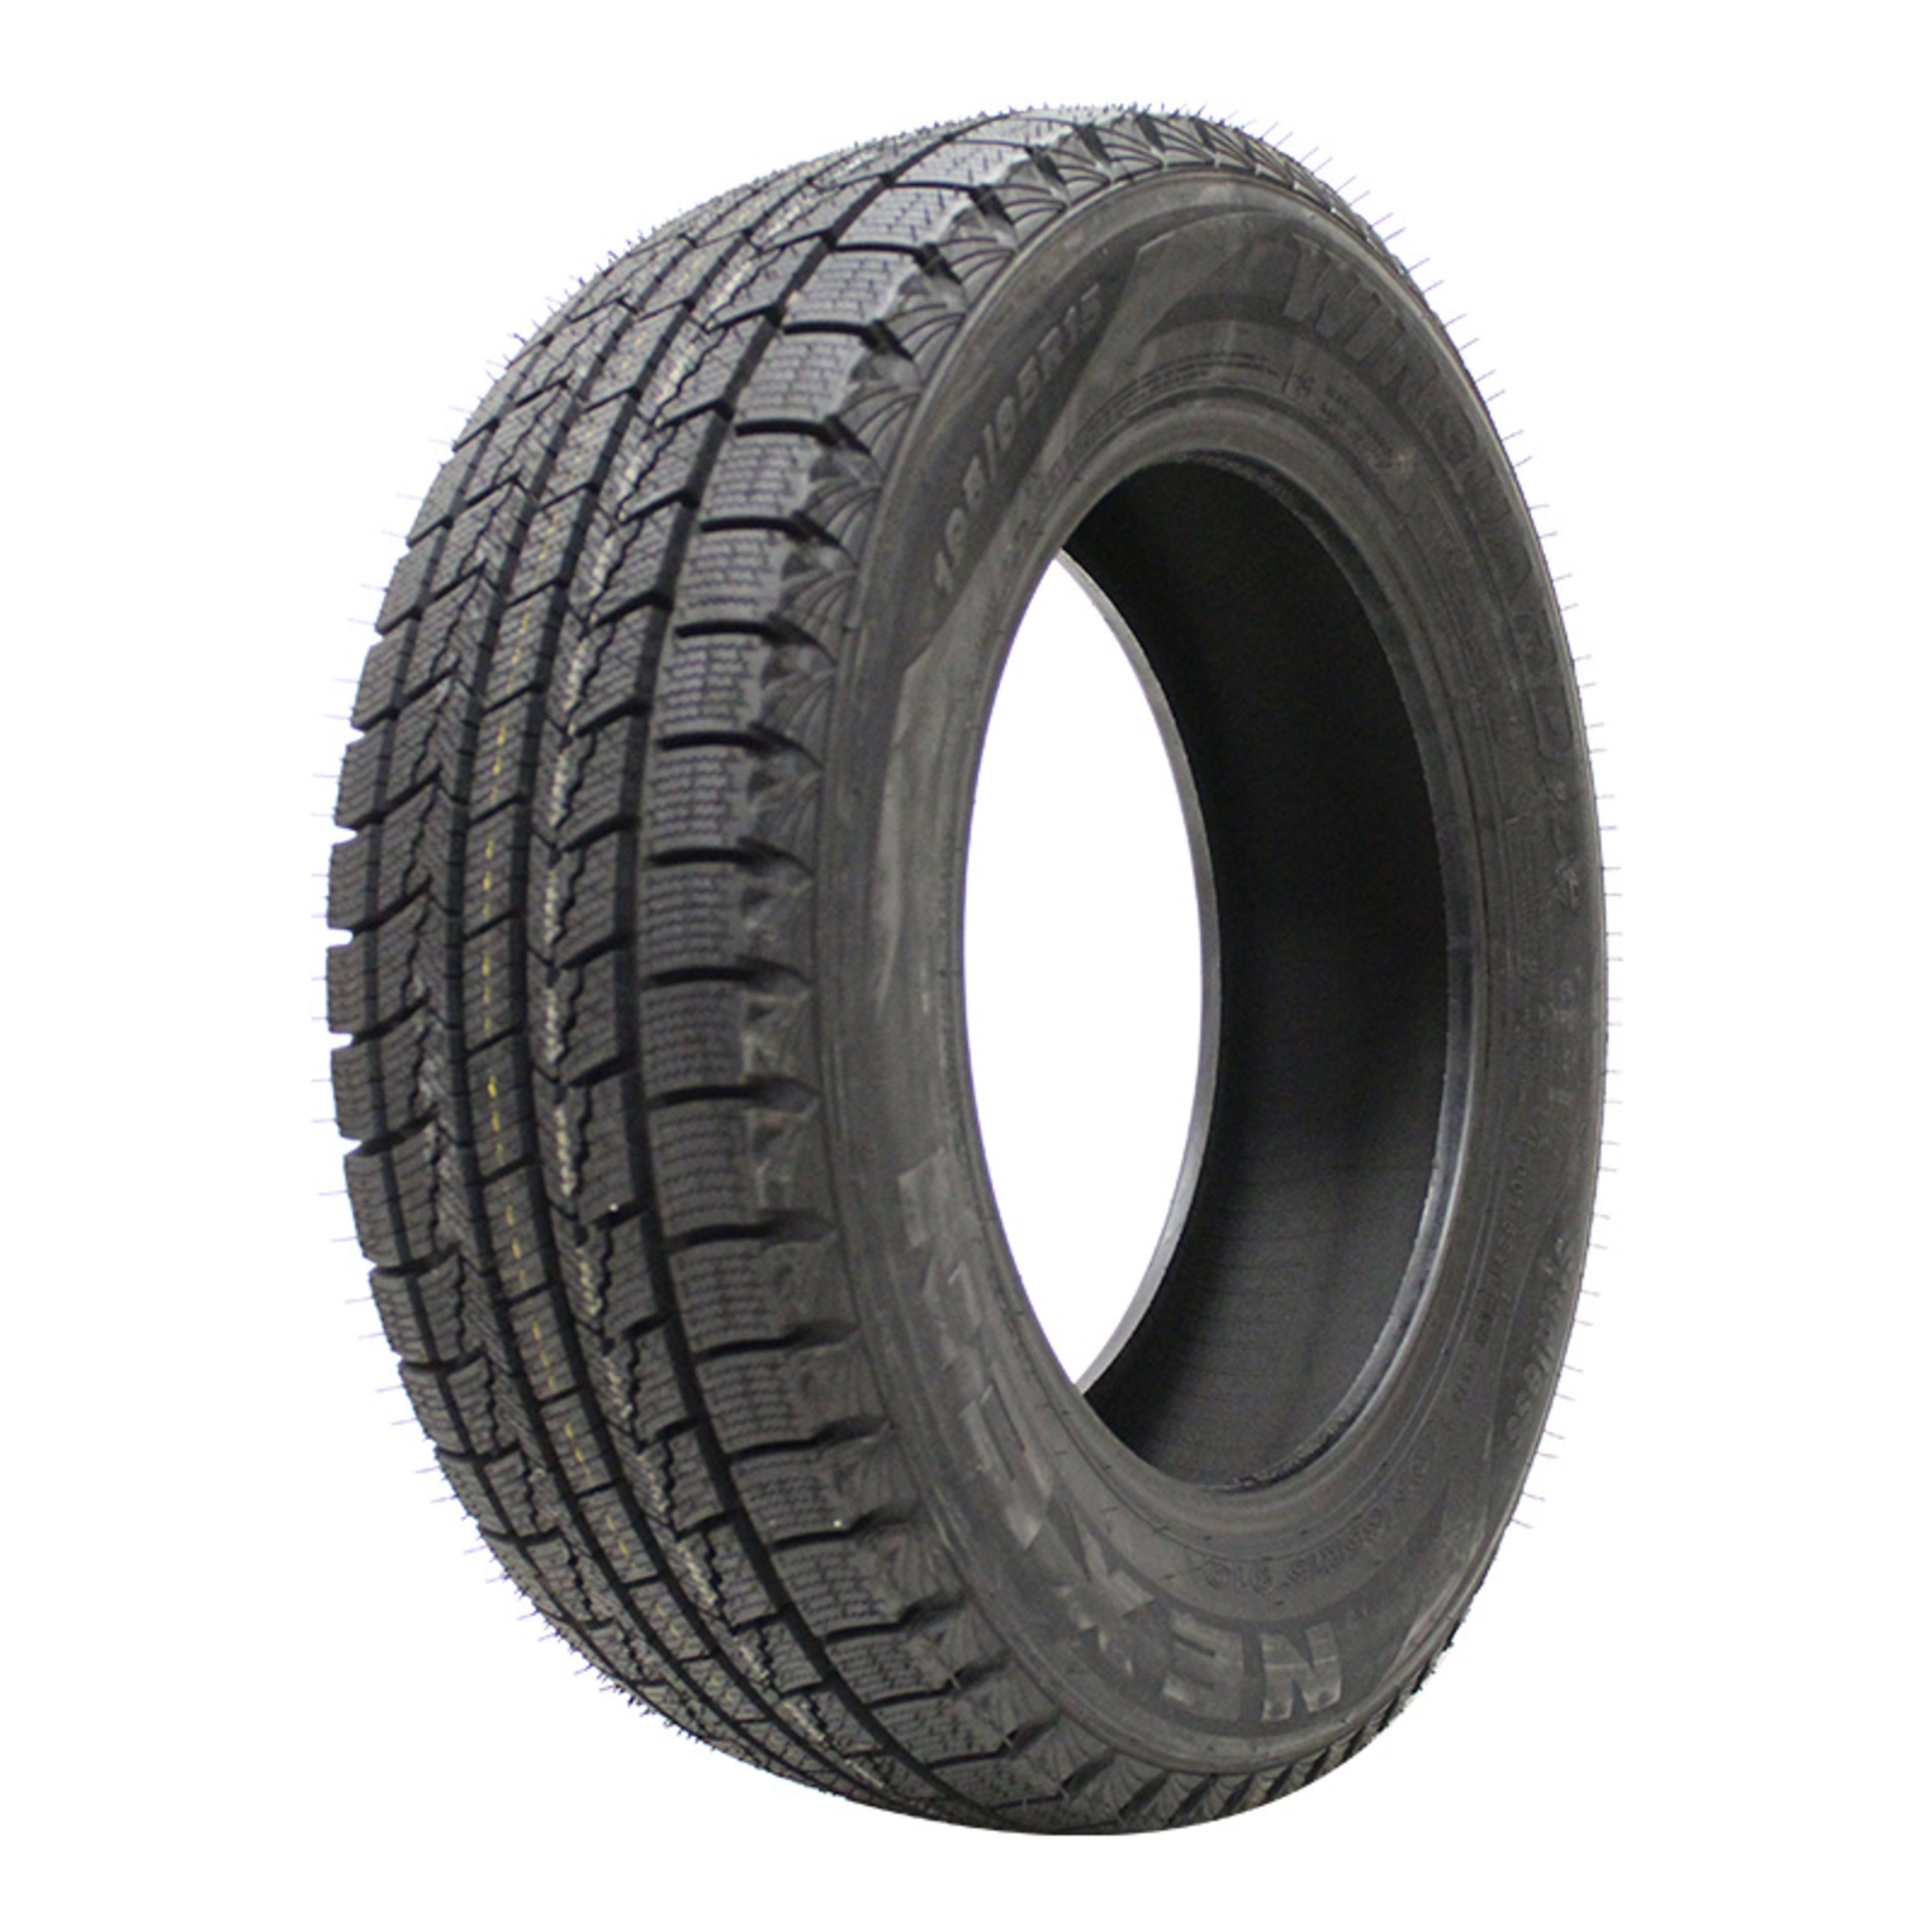 Buy Nexen SimpleTire Winguard Online Tires Ice 